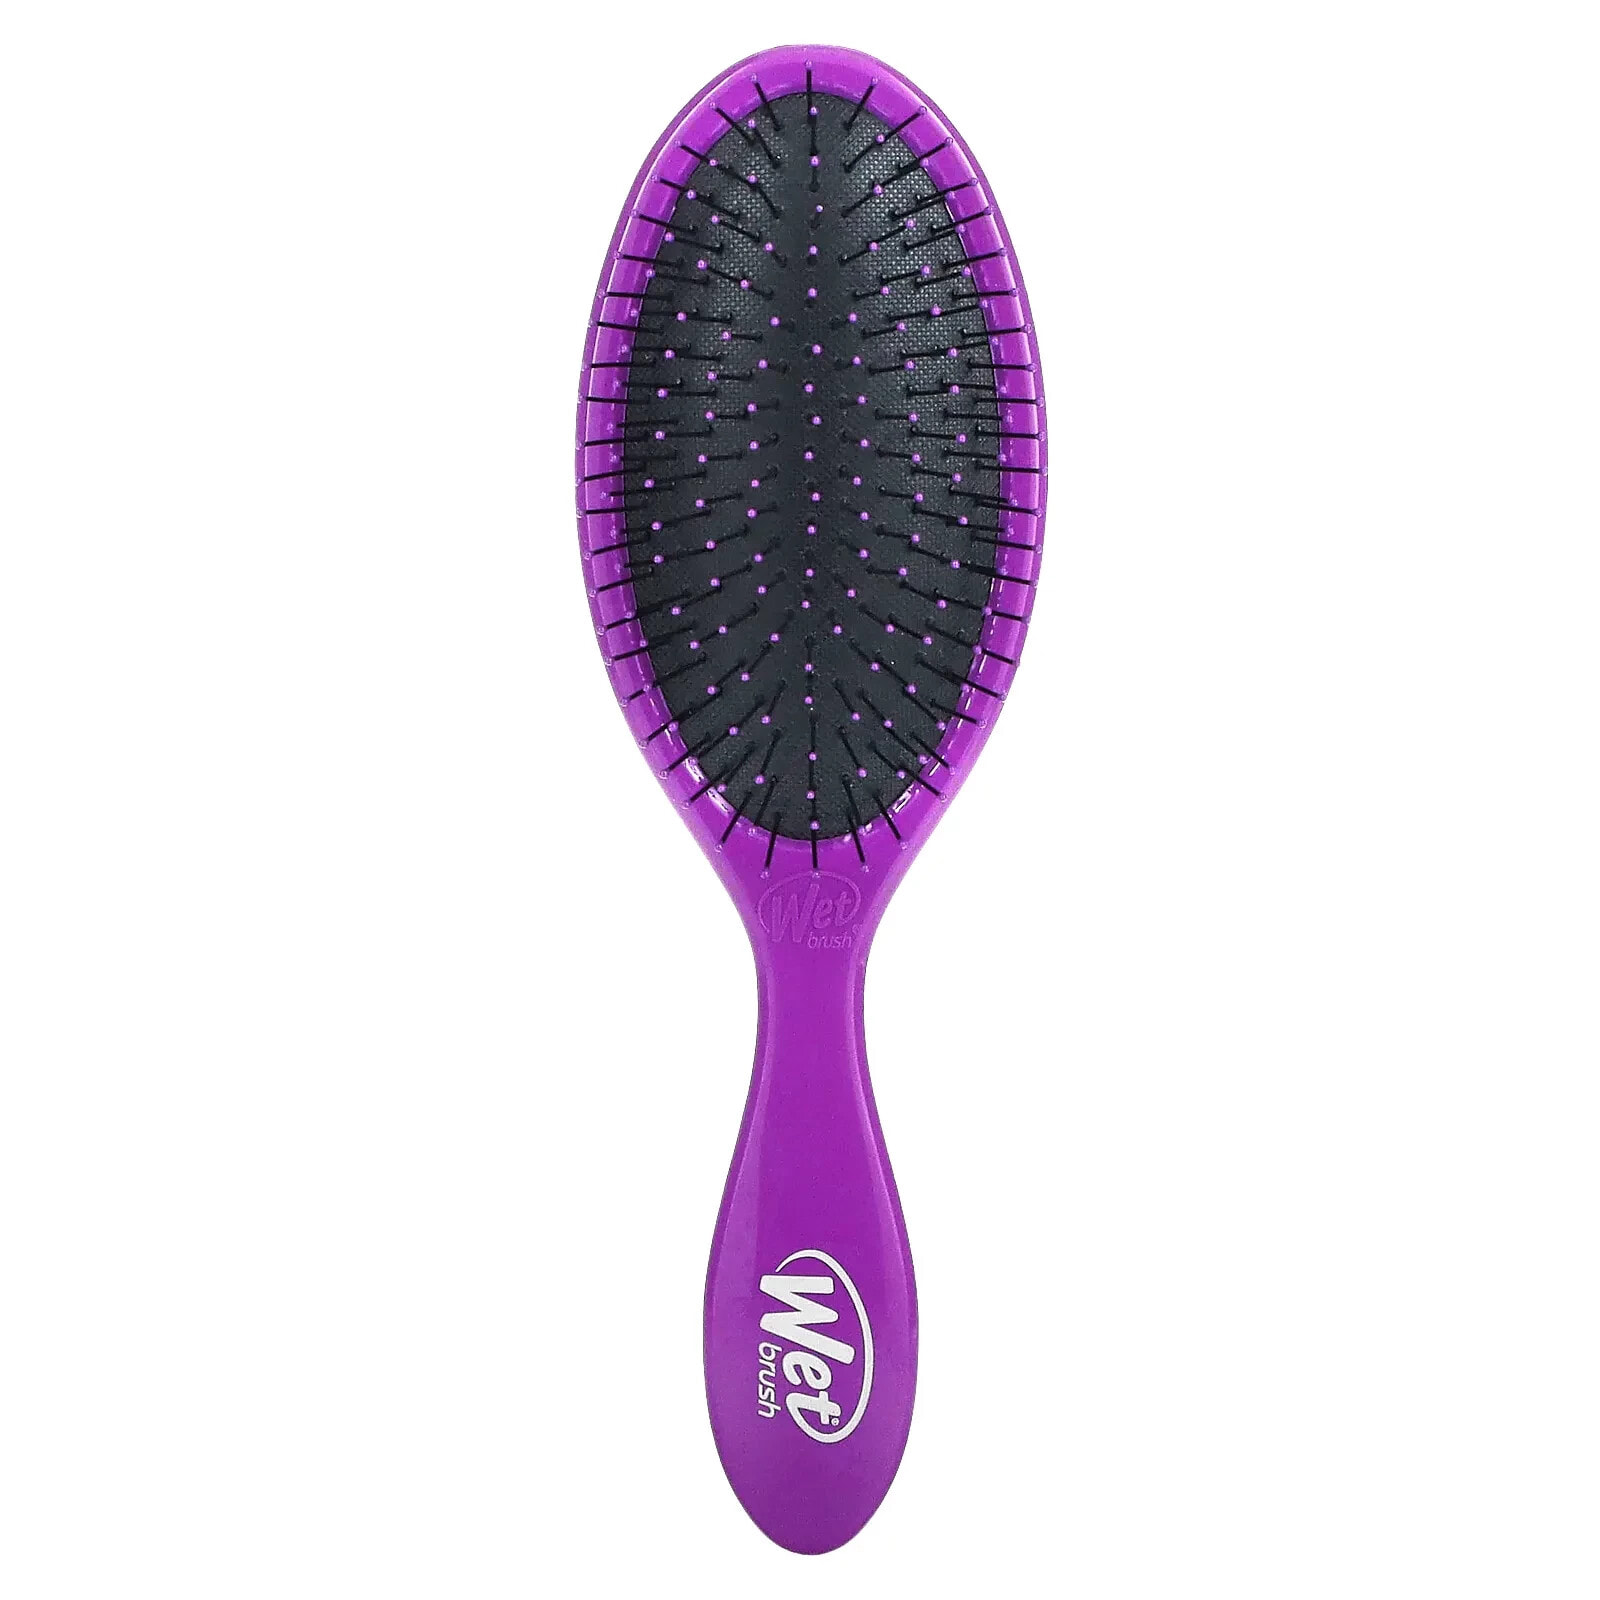 Вет Браш, Щетка для распутывания волос Original Detangler Brush, фиолетовая, 1 шт.